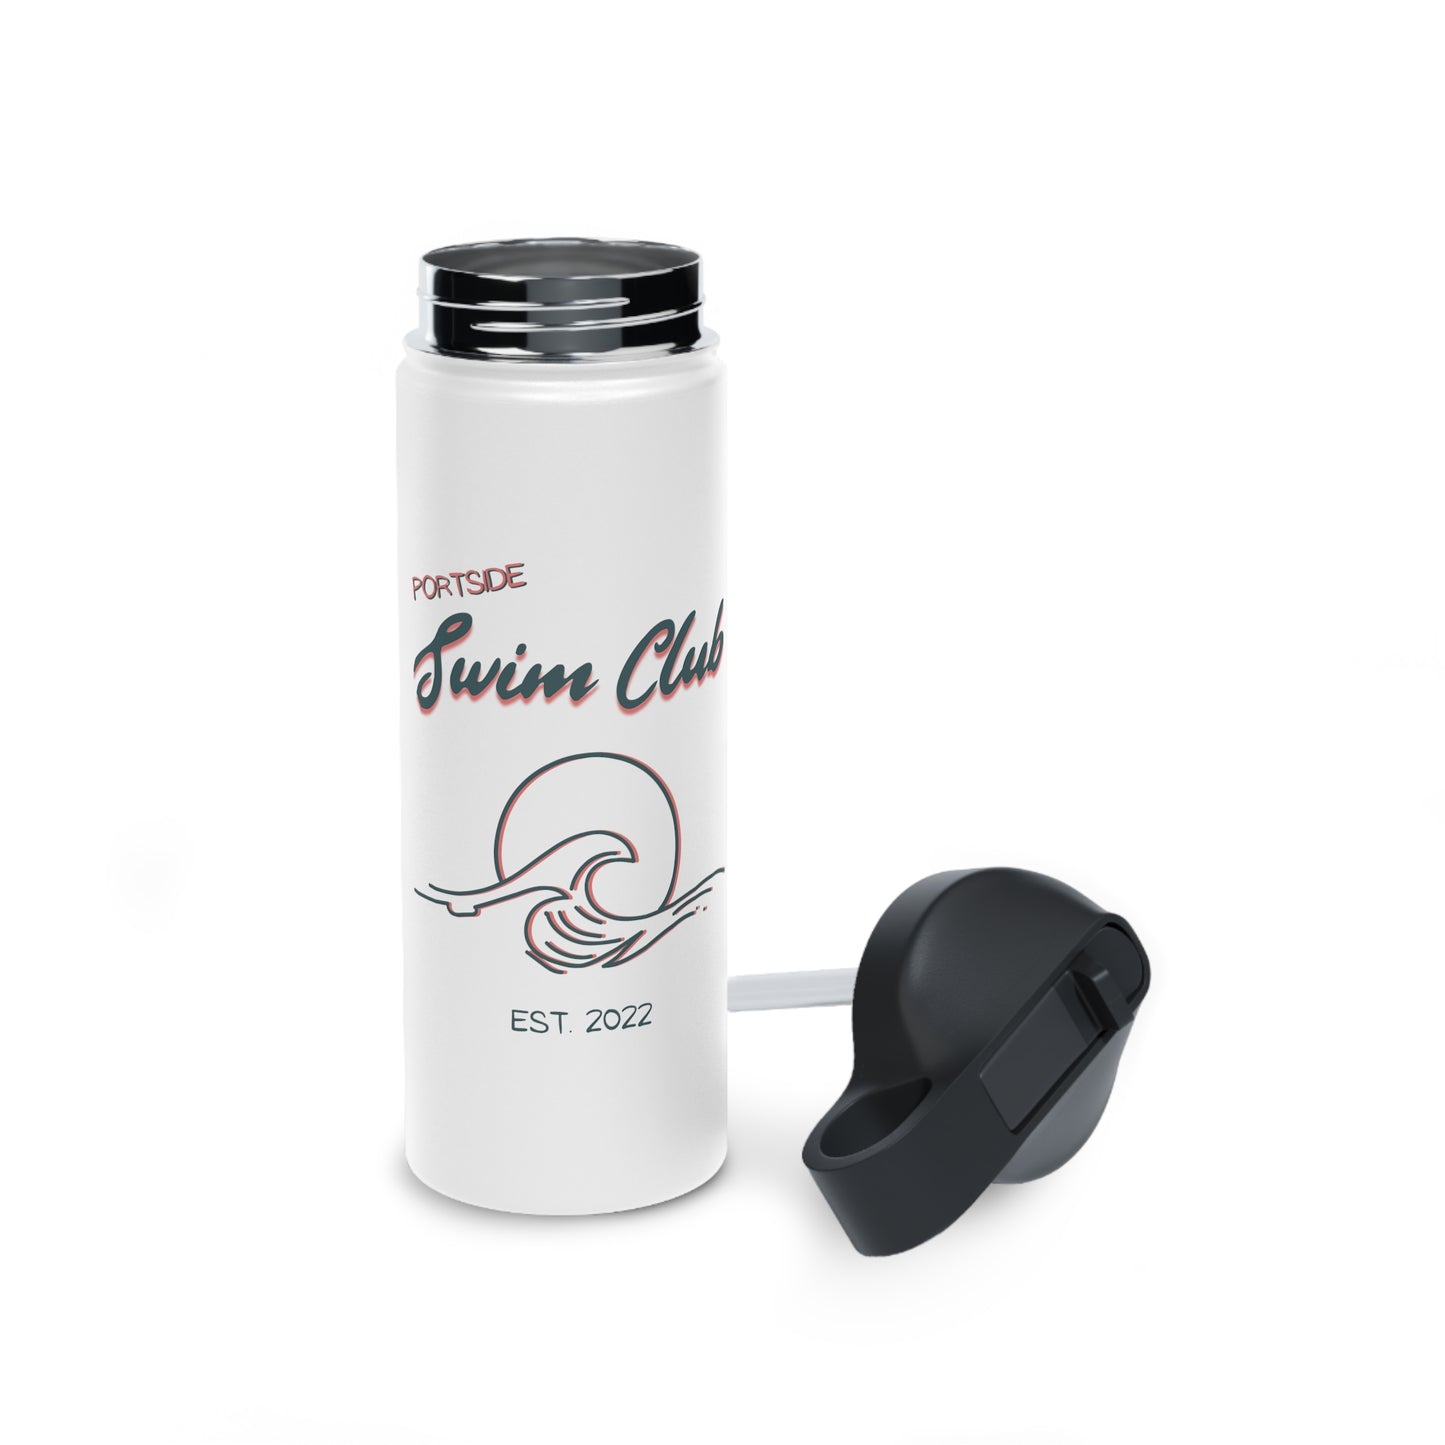 Swim Club Water Bottle